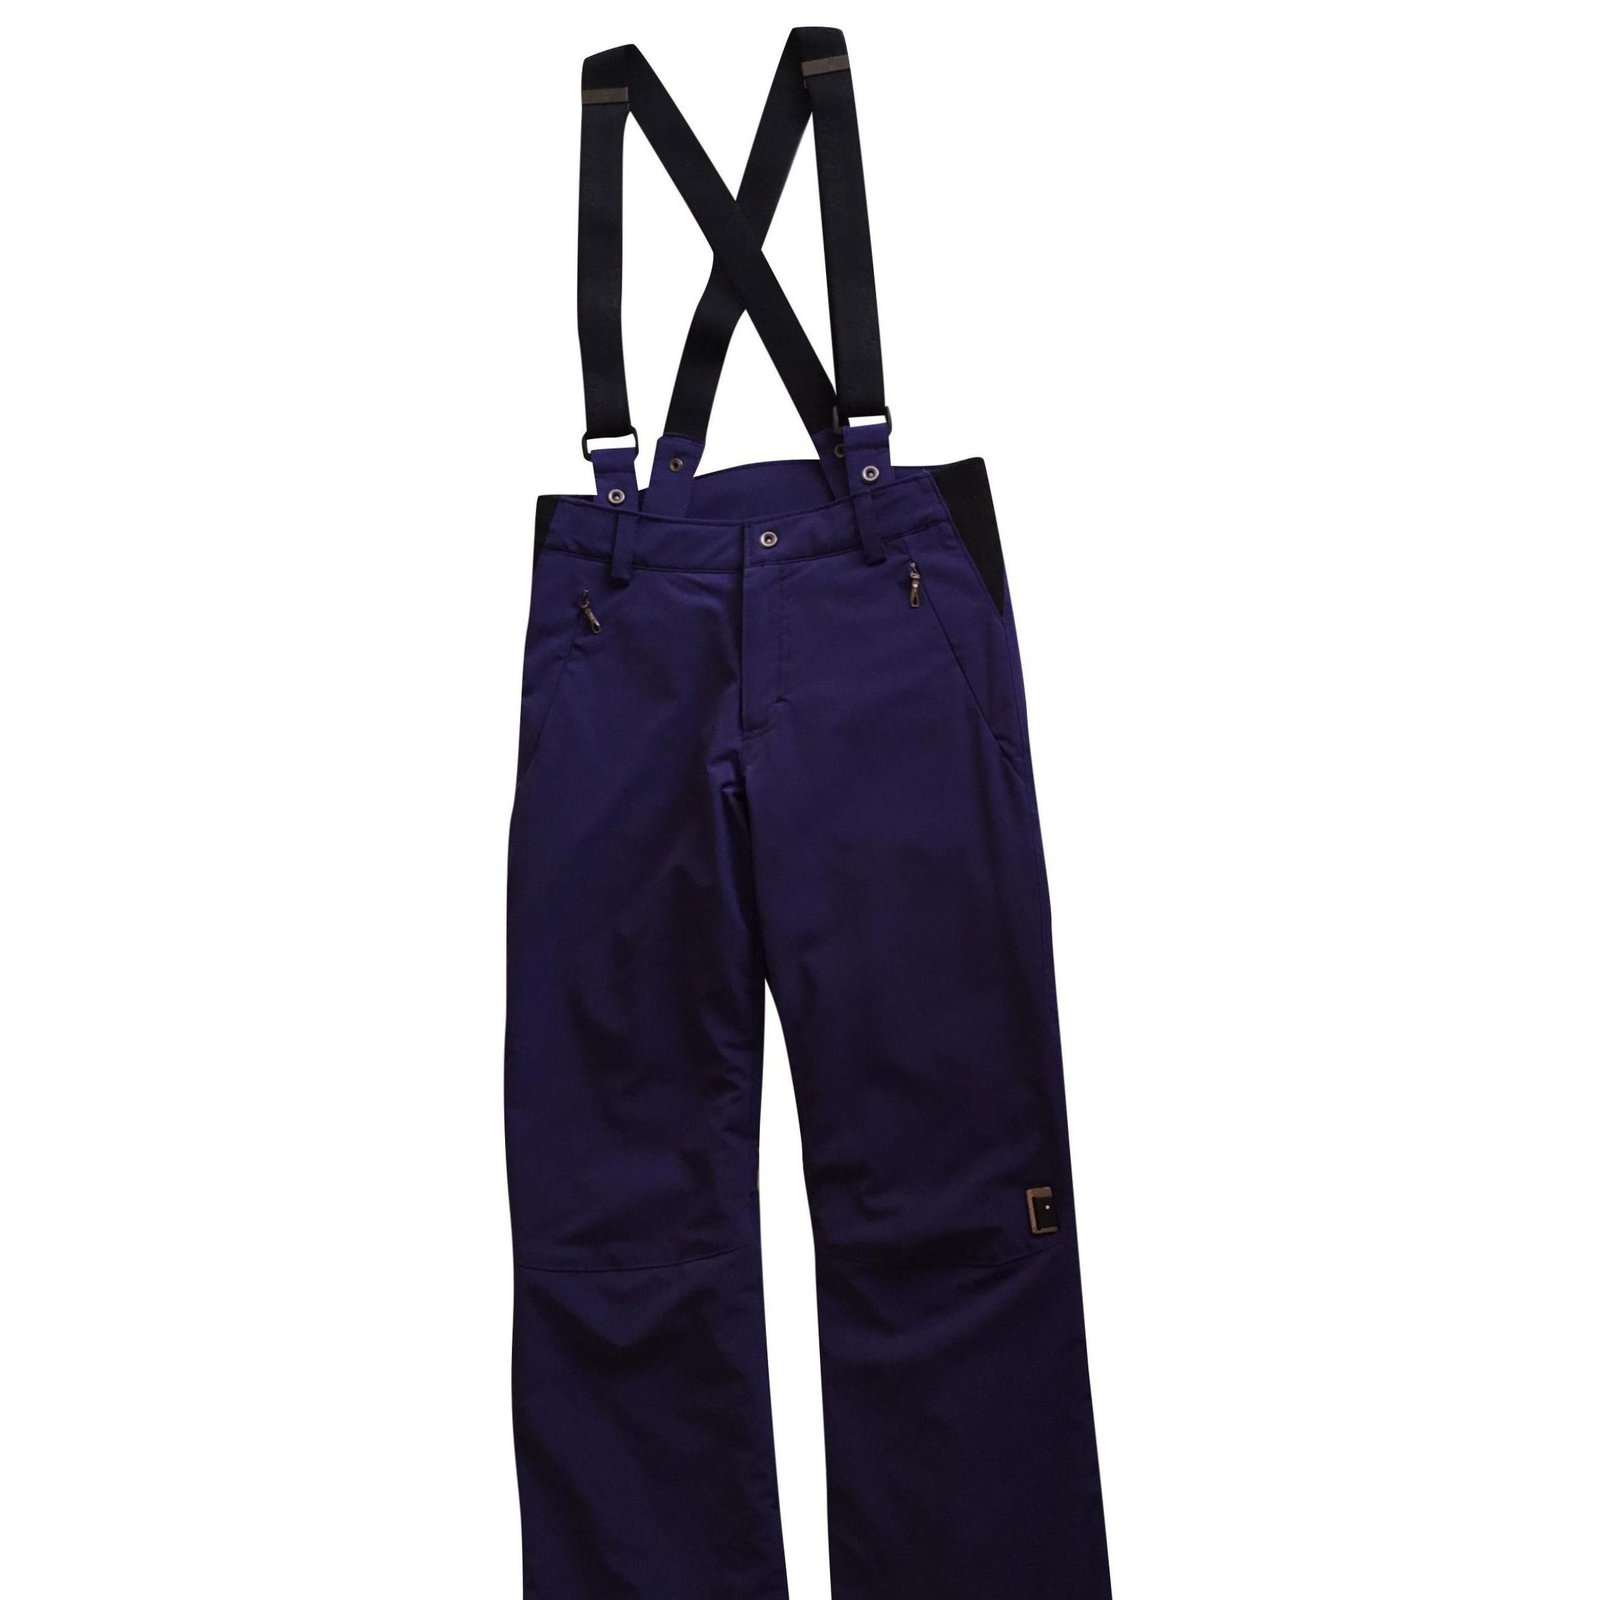 https://cdn1.jolicloset.com/imgr/full/2020/01/165560-1a/purple-other-spyder-ski-trousers-pants-leggings.jpg